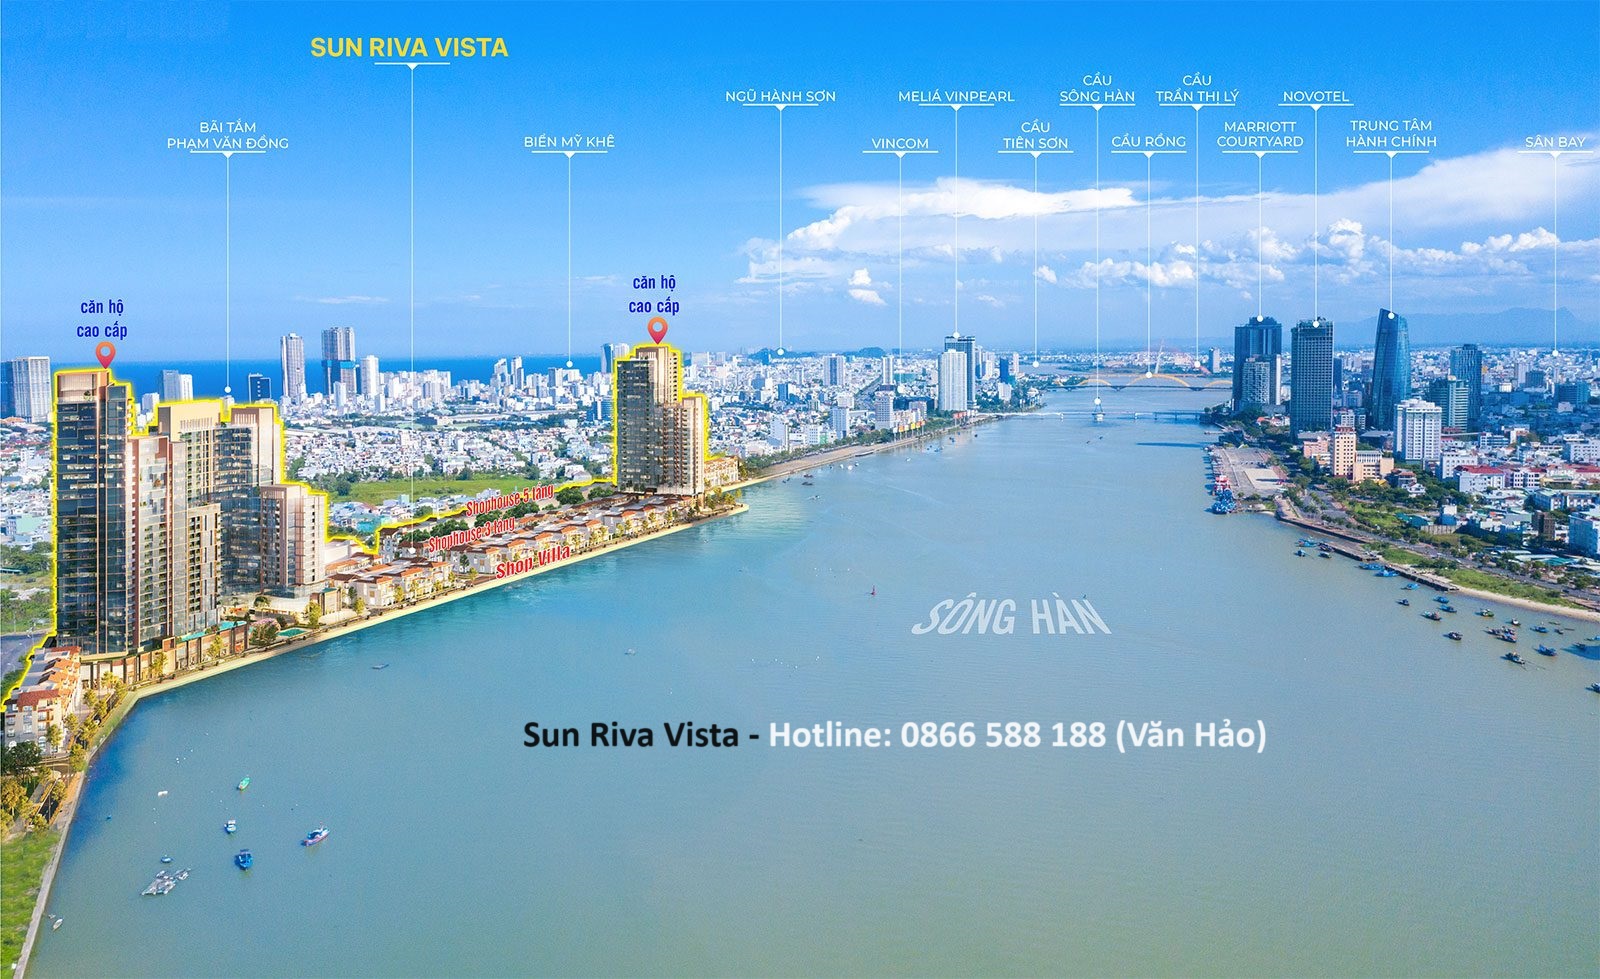 Dự Án Sun Riva Vista Đà Nẵng - Căn Hộ và Biệt Thự Ven Sông Hàn Tel: 0866 588 188